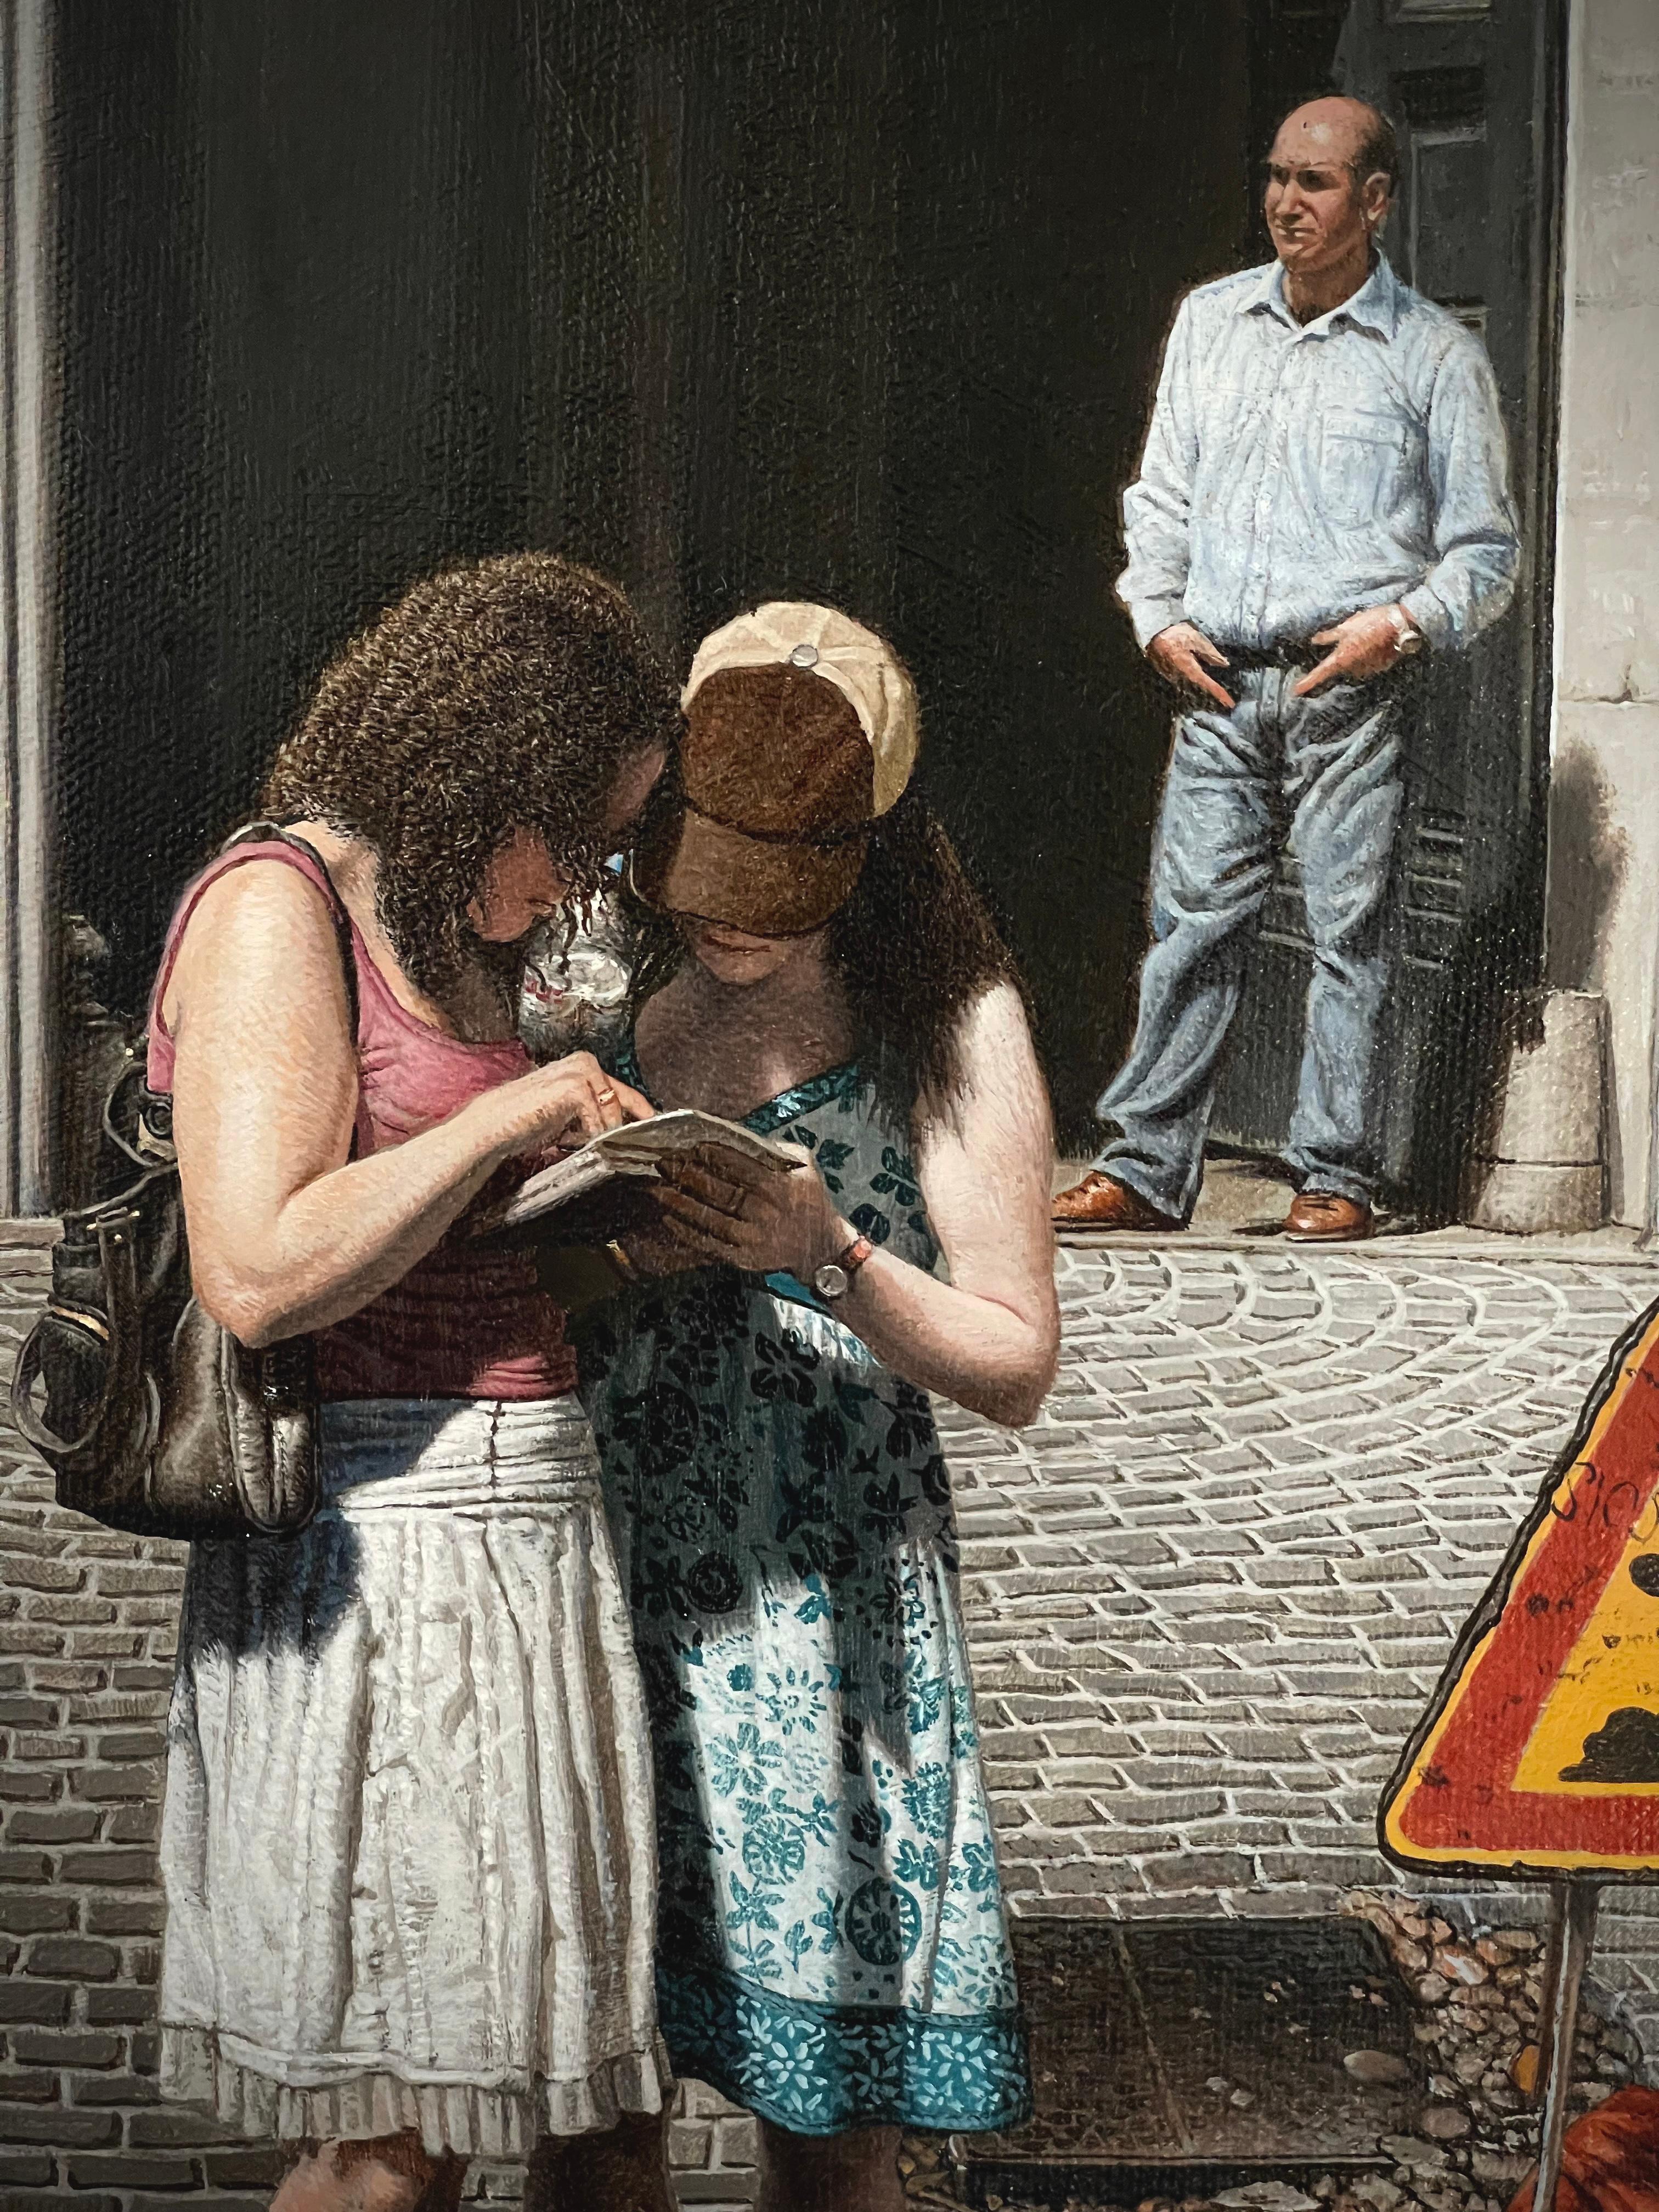 Rome, Italie, paysage urbain figuratif réaliste de deux filles et d'un homme dans une rue romaine - Réalisme Painting par Stone Roberts